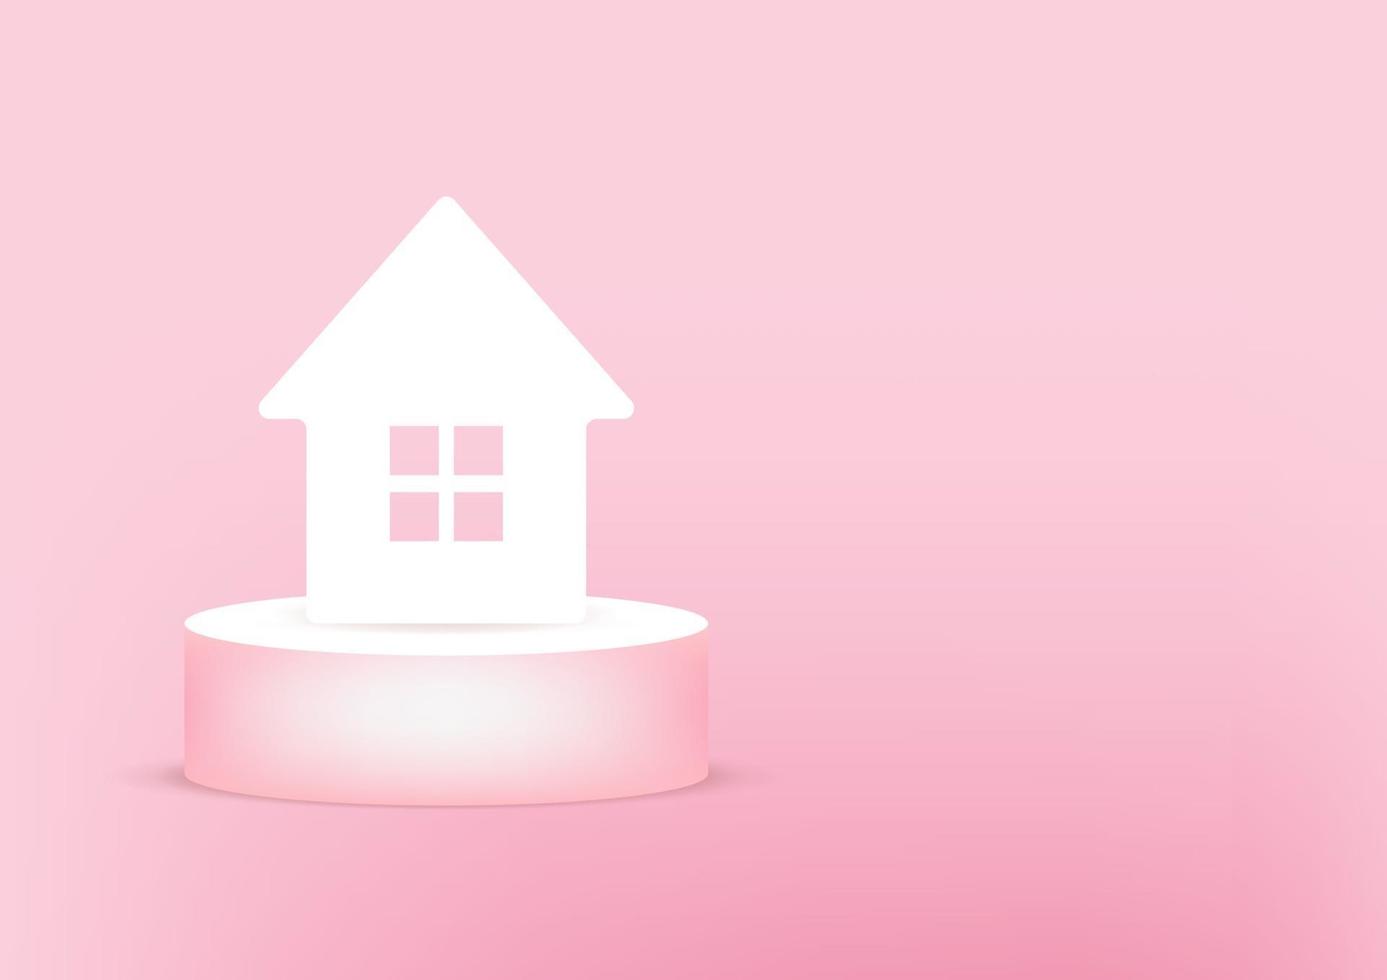 papel de casa 3d no fundo rosa. conceito de construção de arquitetura imobiliária de casa ou casa. vetor